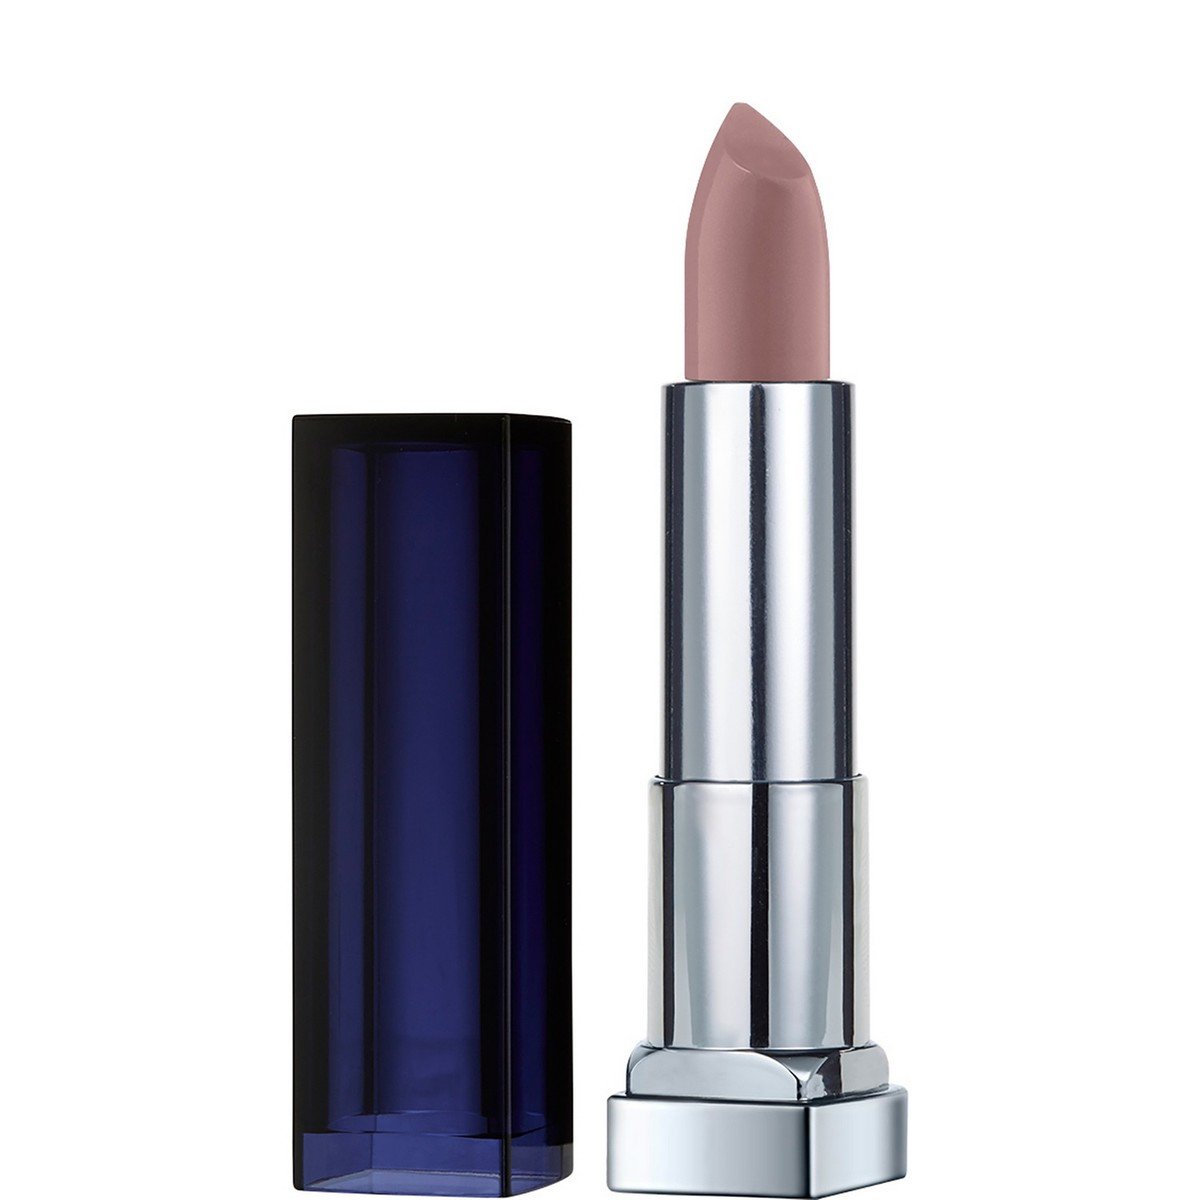 Maybelline Color Sensational Loaded Bolds Lipstick 893 Gone Greige 1pc